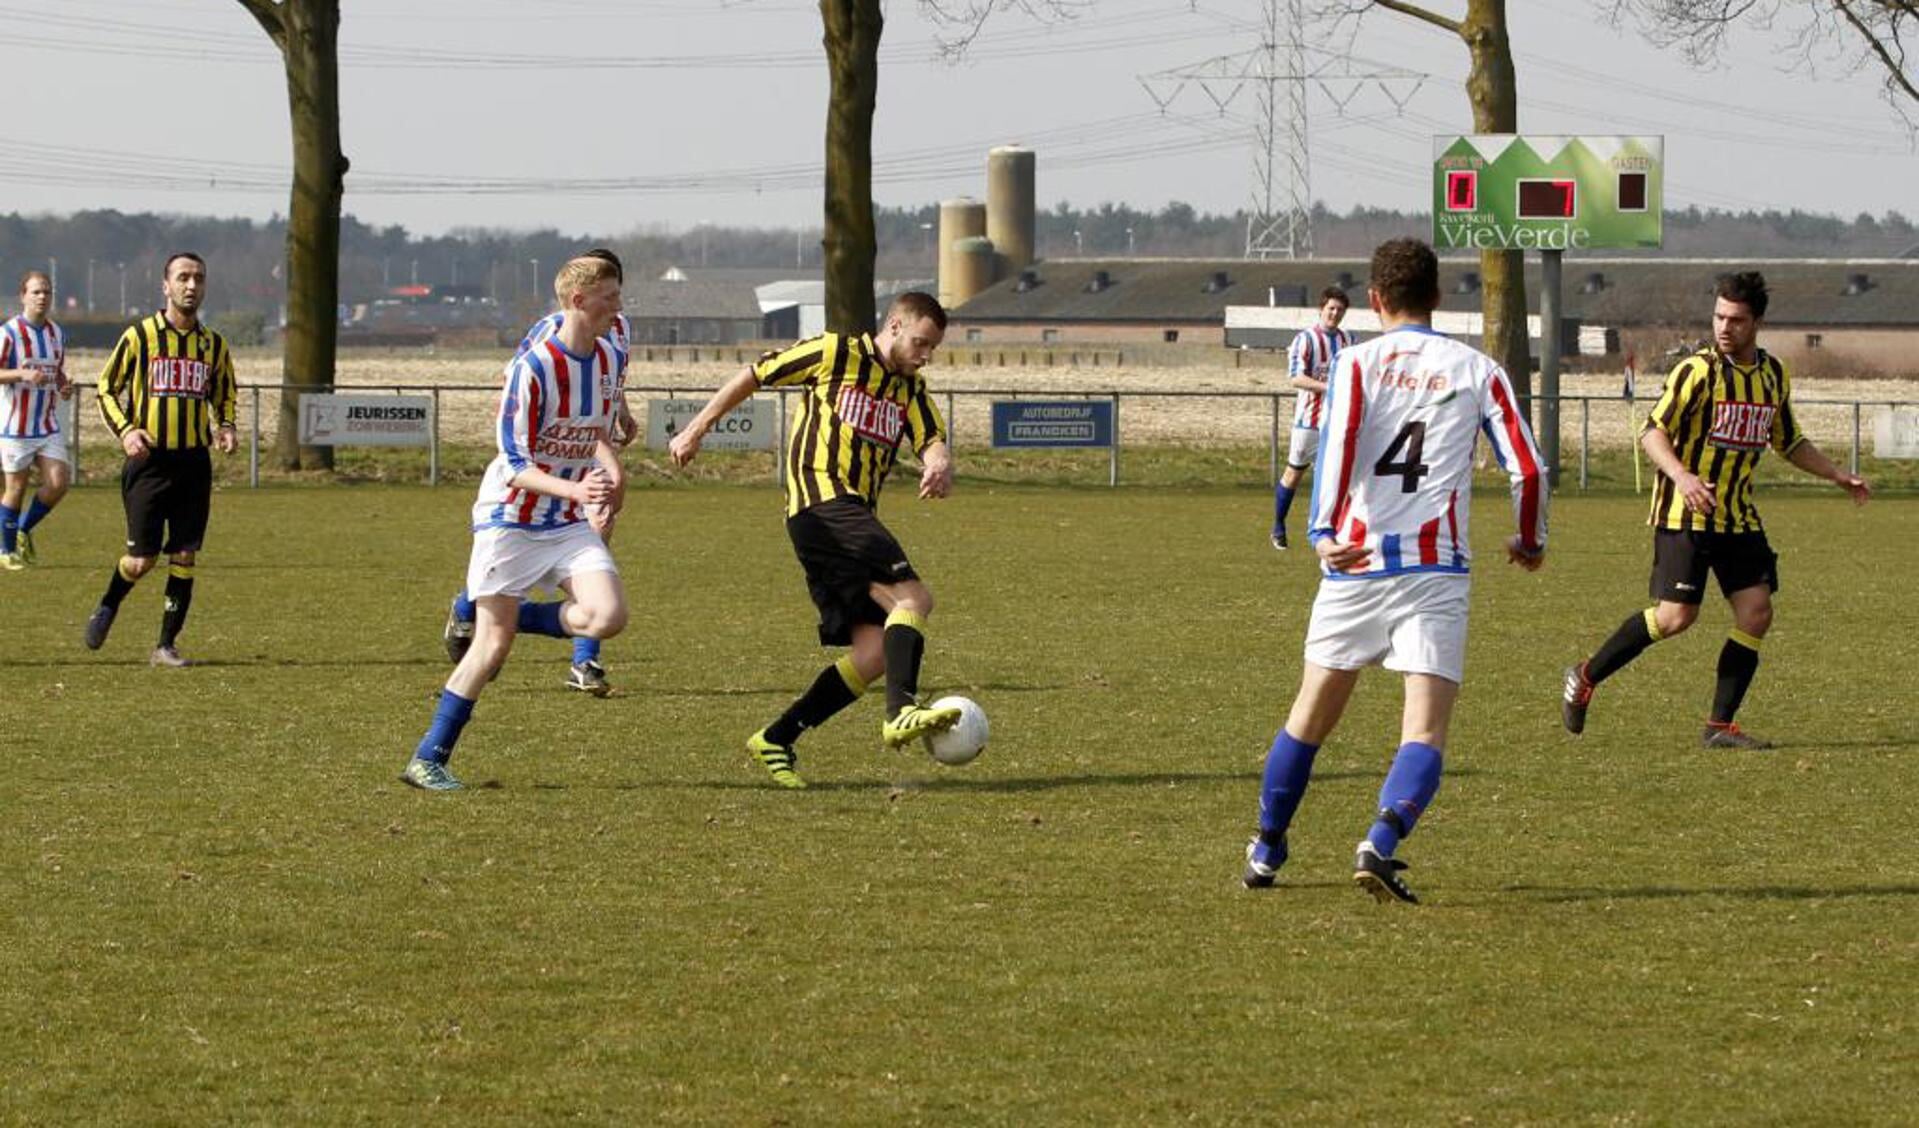 BVV'27 won zondag in Oirlo de derby tegen SVOC'01 met 2-5. Foto: Rikus ten Brucke